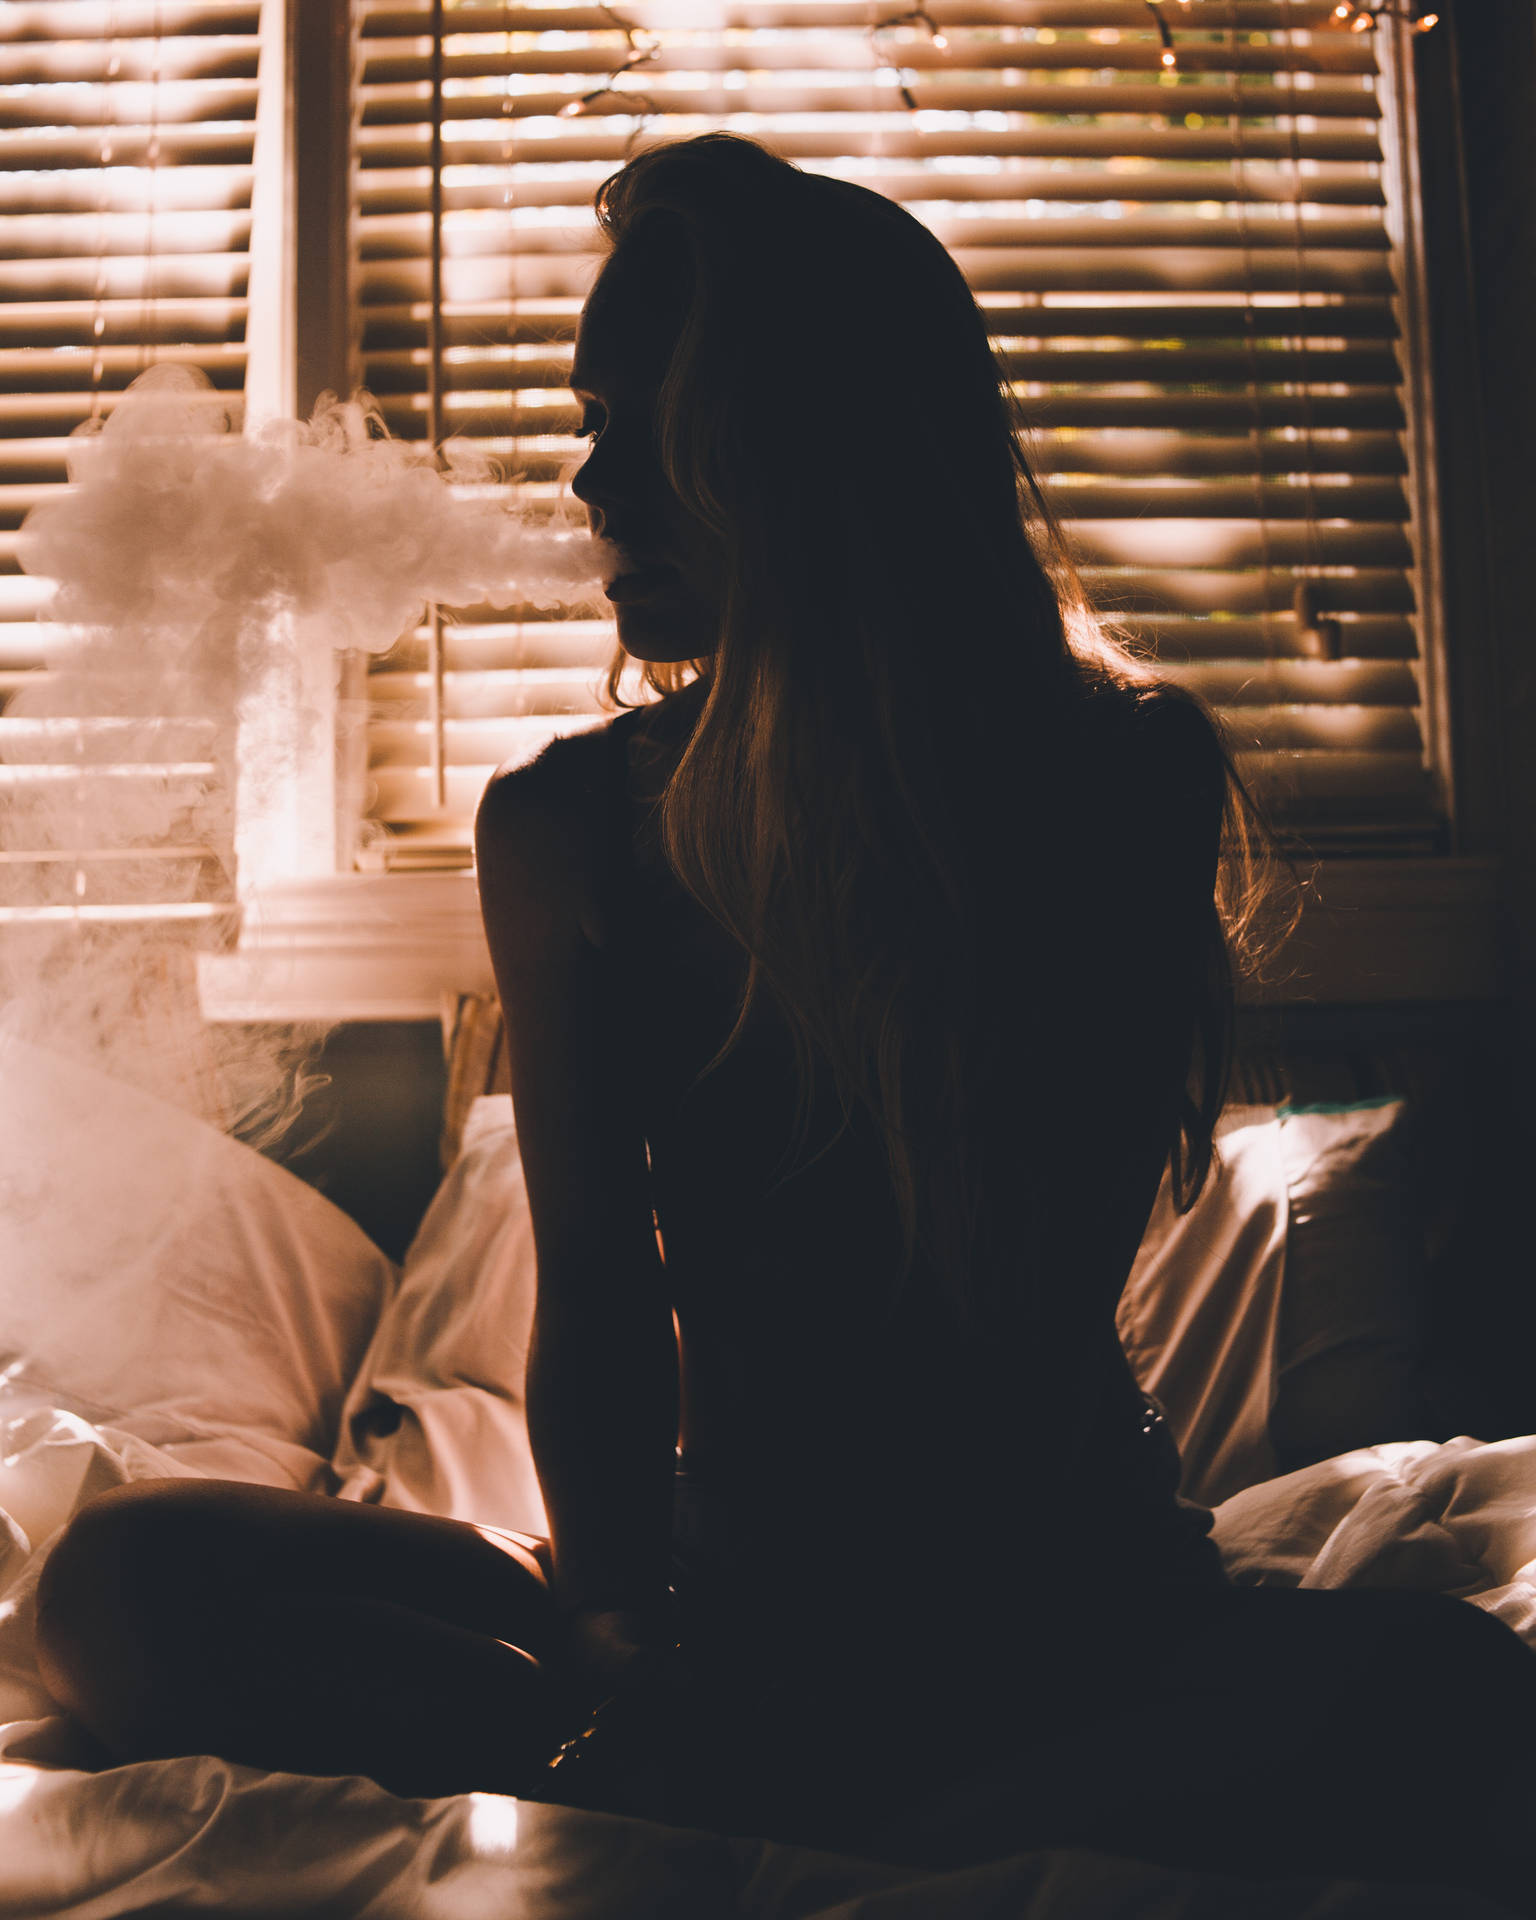 Girl Smoking On Bed Wallpaper